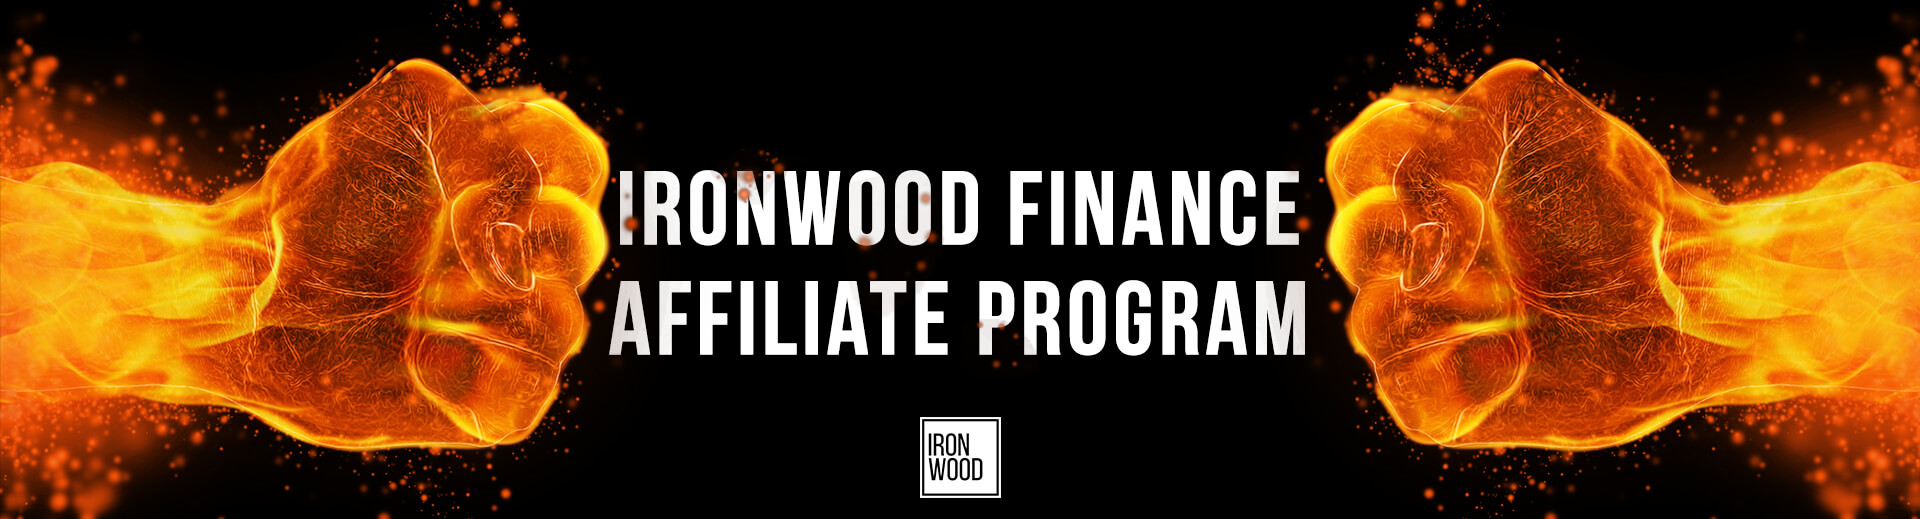 ironwood affiliate, funding, lending, iso, ironwood, affiliate program